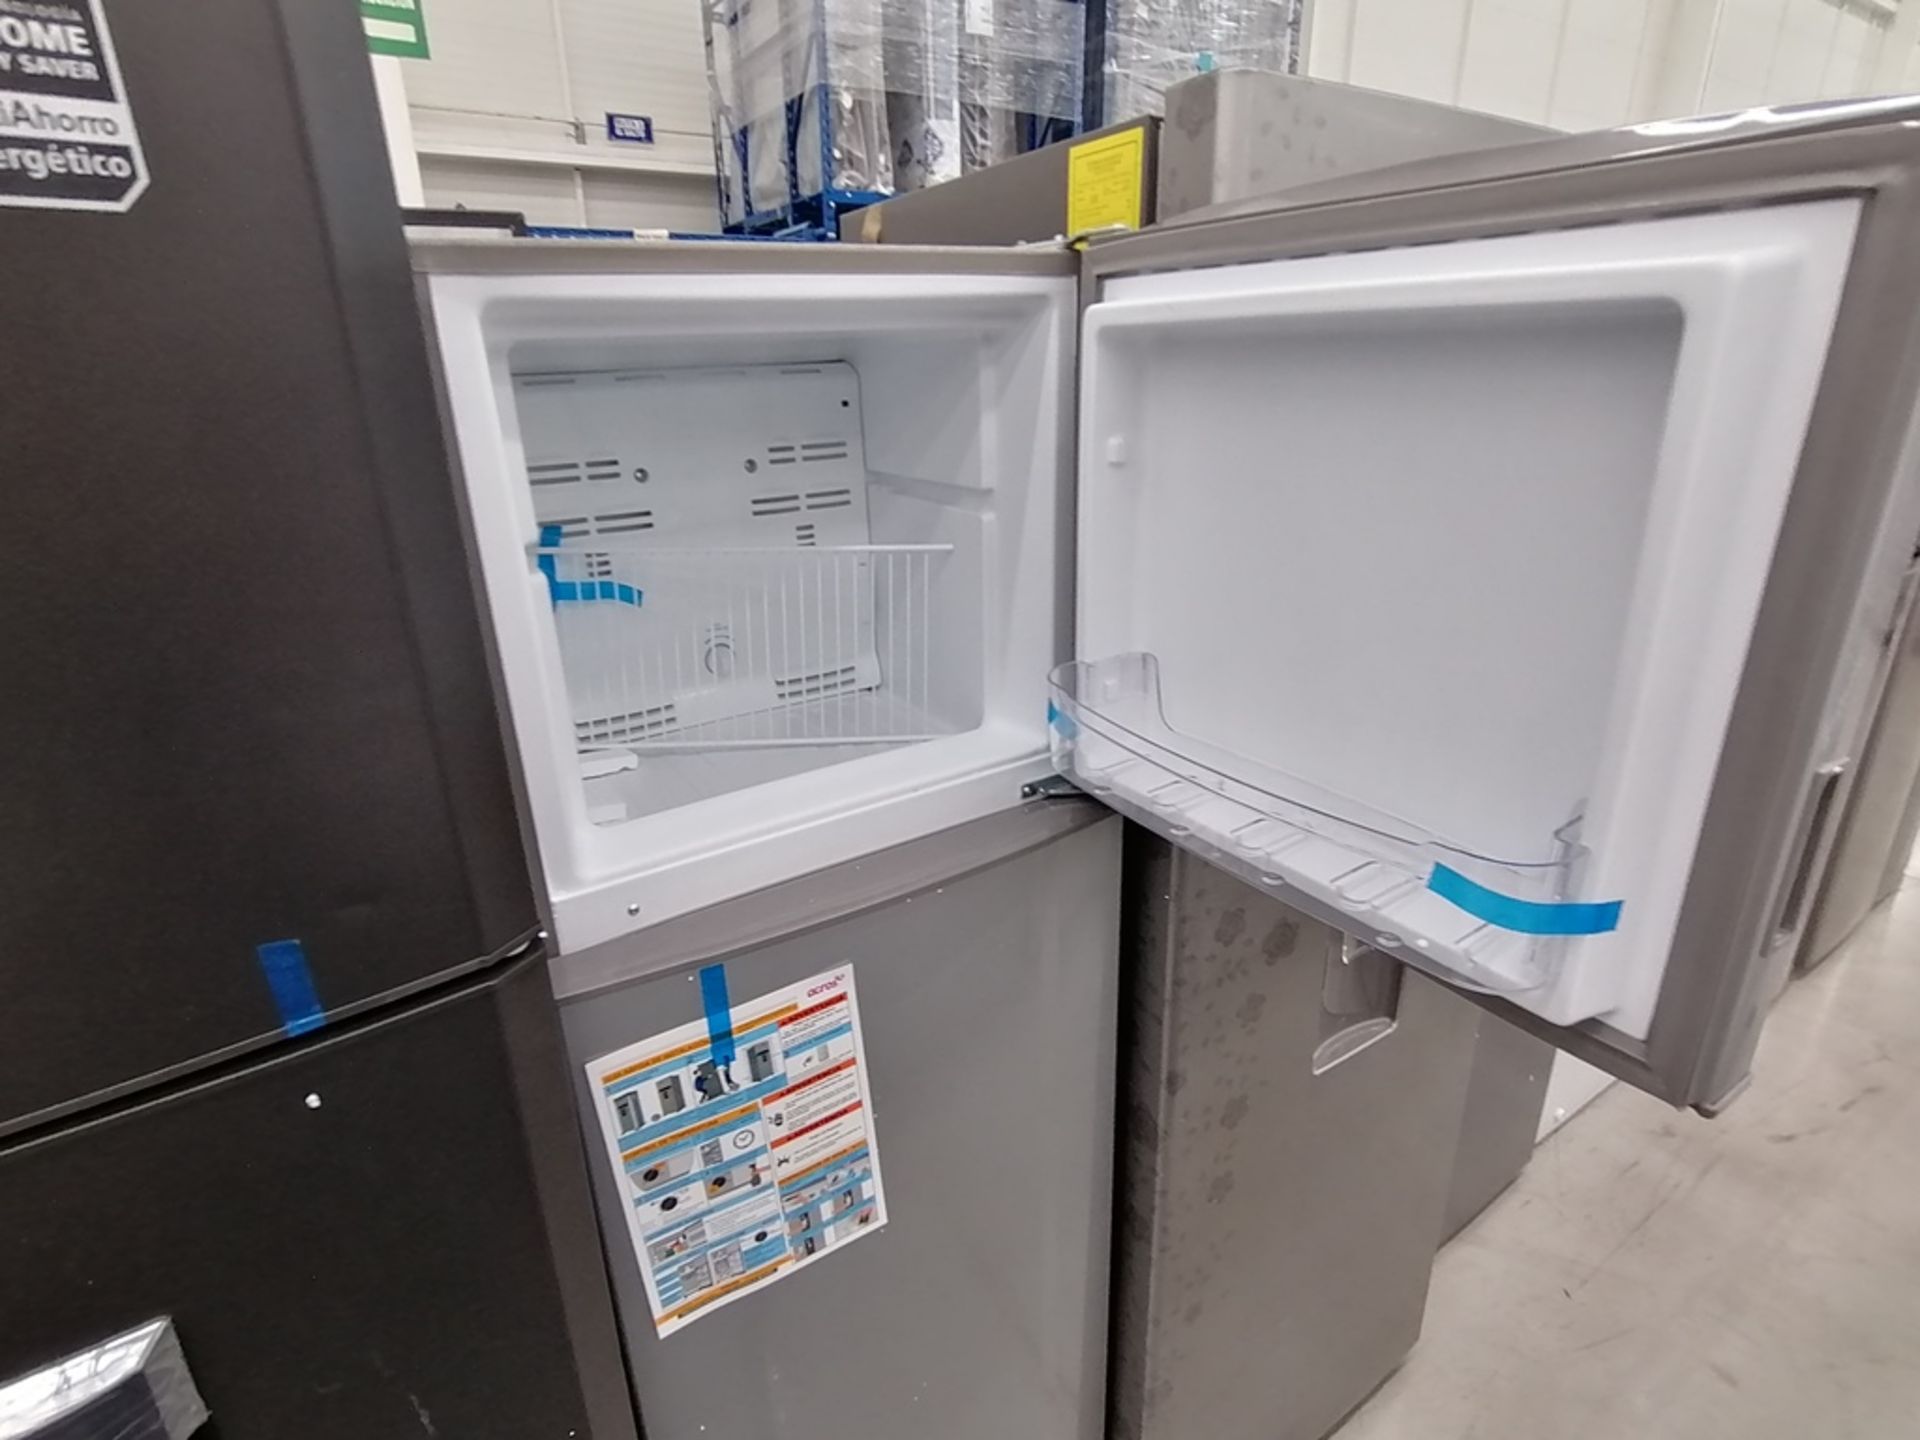 Lote de 2 refrigeradores incluye: 1 Refrigerador con dispensador de agua, Marca Mabe, Modelo RMA300 - Image 6 of 15